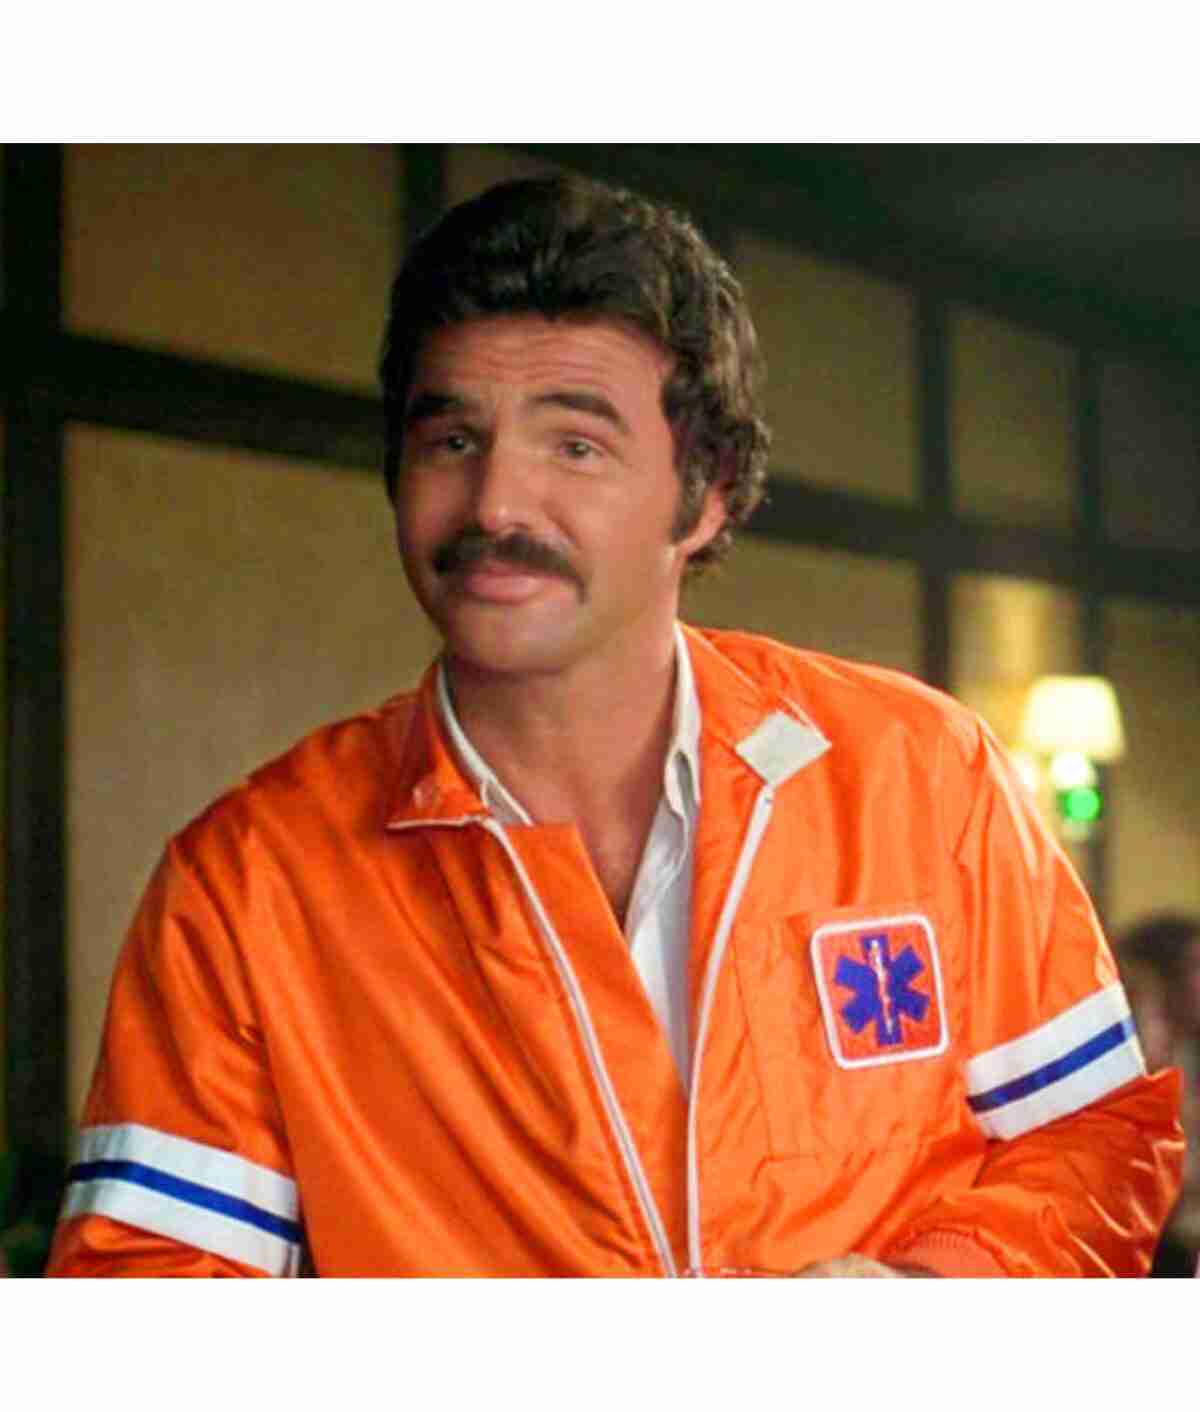 J.J McClure as Burt Reynolds in The Cannonball Run wearing an orange jacket